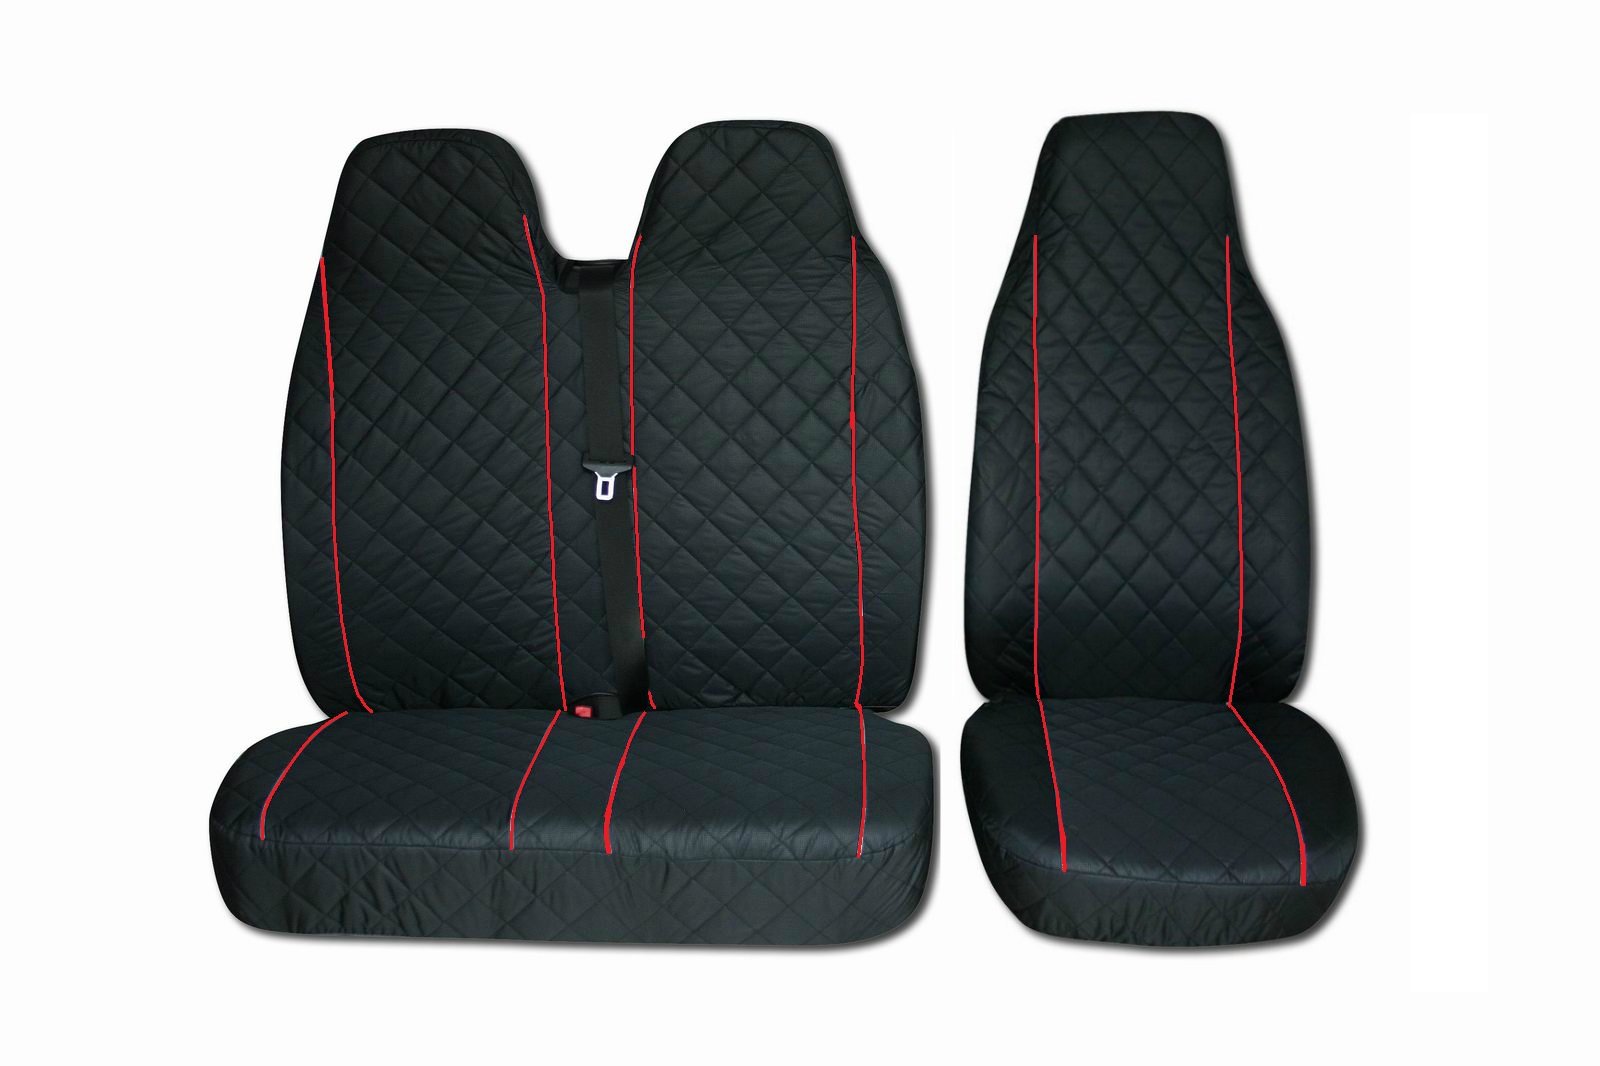 Sitzbezüge für Volkswagen VW Transporter T4, T5 (1 Single 1 Double) Roter Paspelierung von AVITON LTD